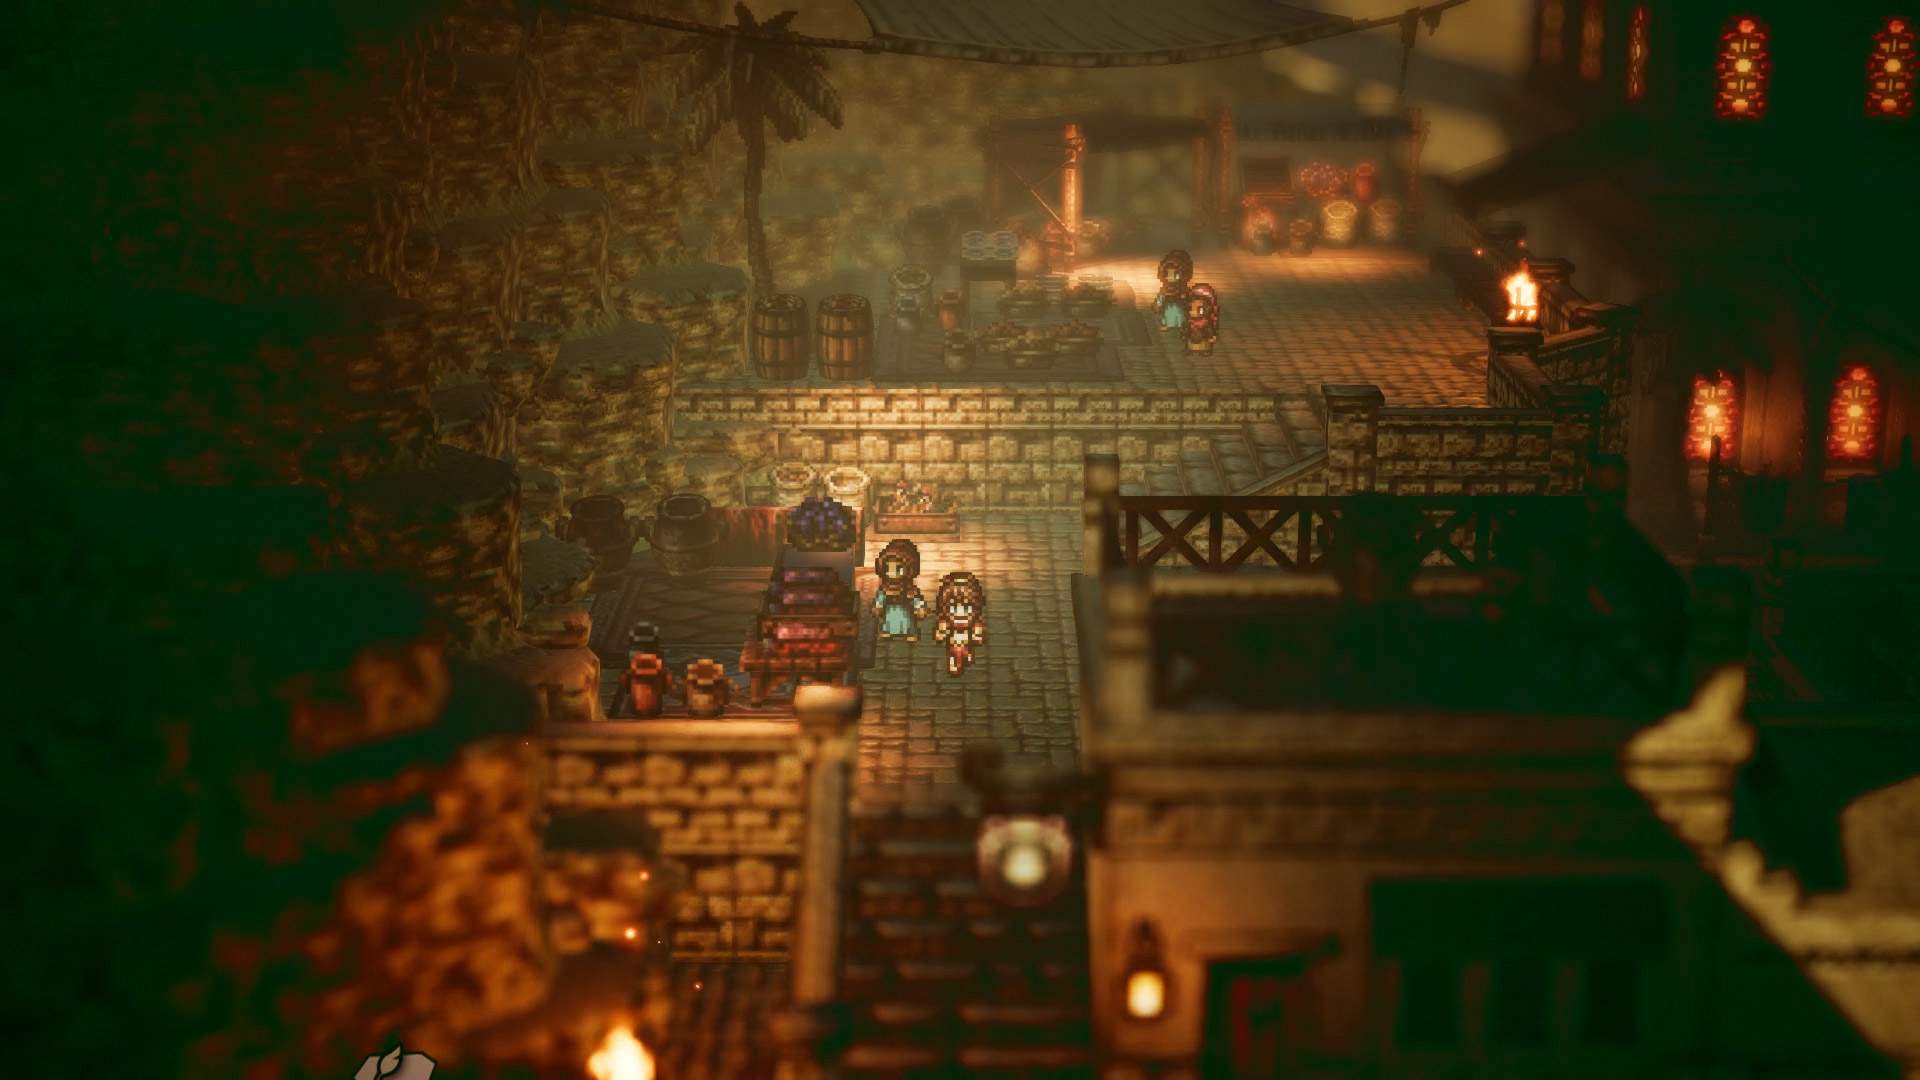 Ein Gameplay-Screenshot von Primrose, die in einer mittelalterlichen Stadt an einem anderen Charakter vorbeigeht.